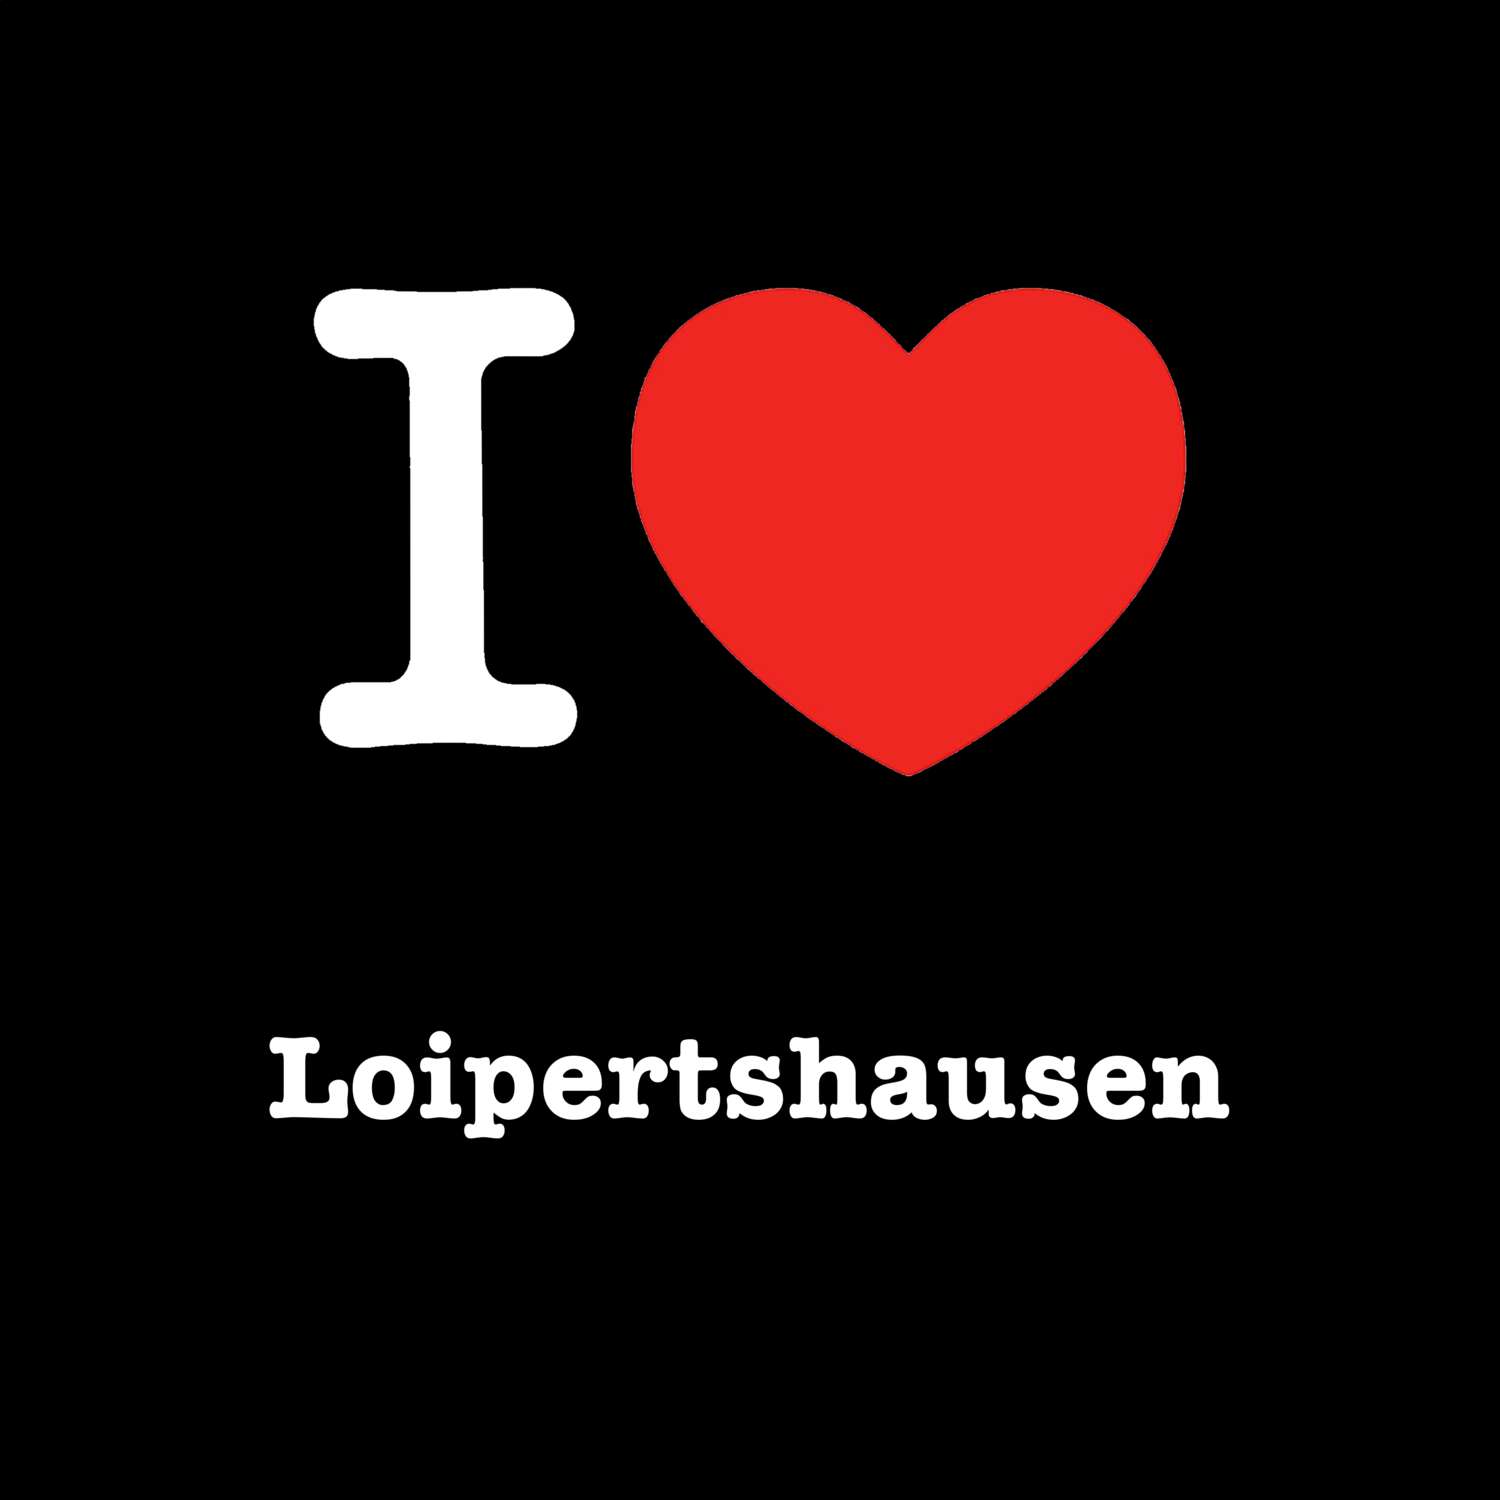 Loipertshausen T-Shirt »I love«